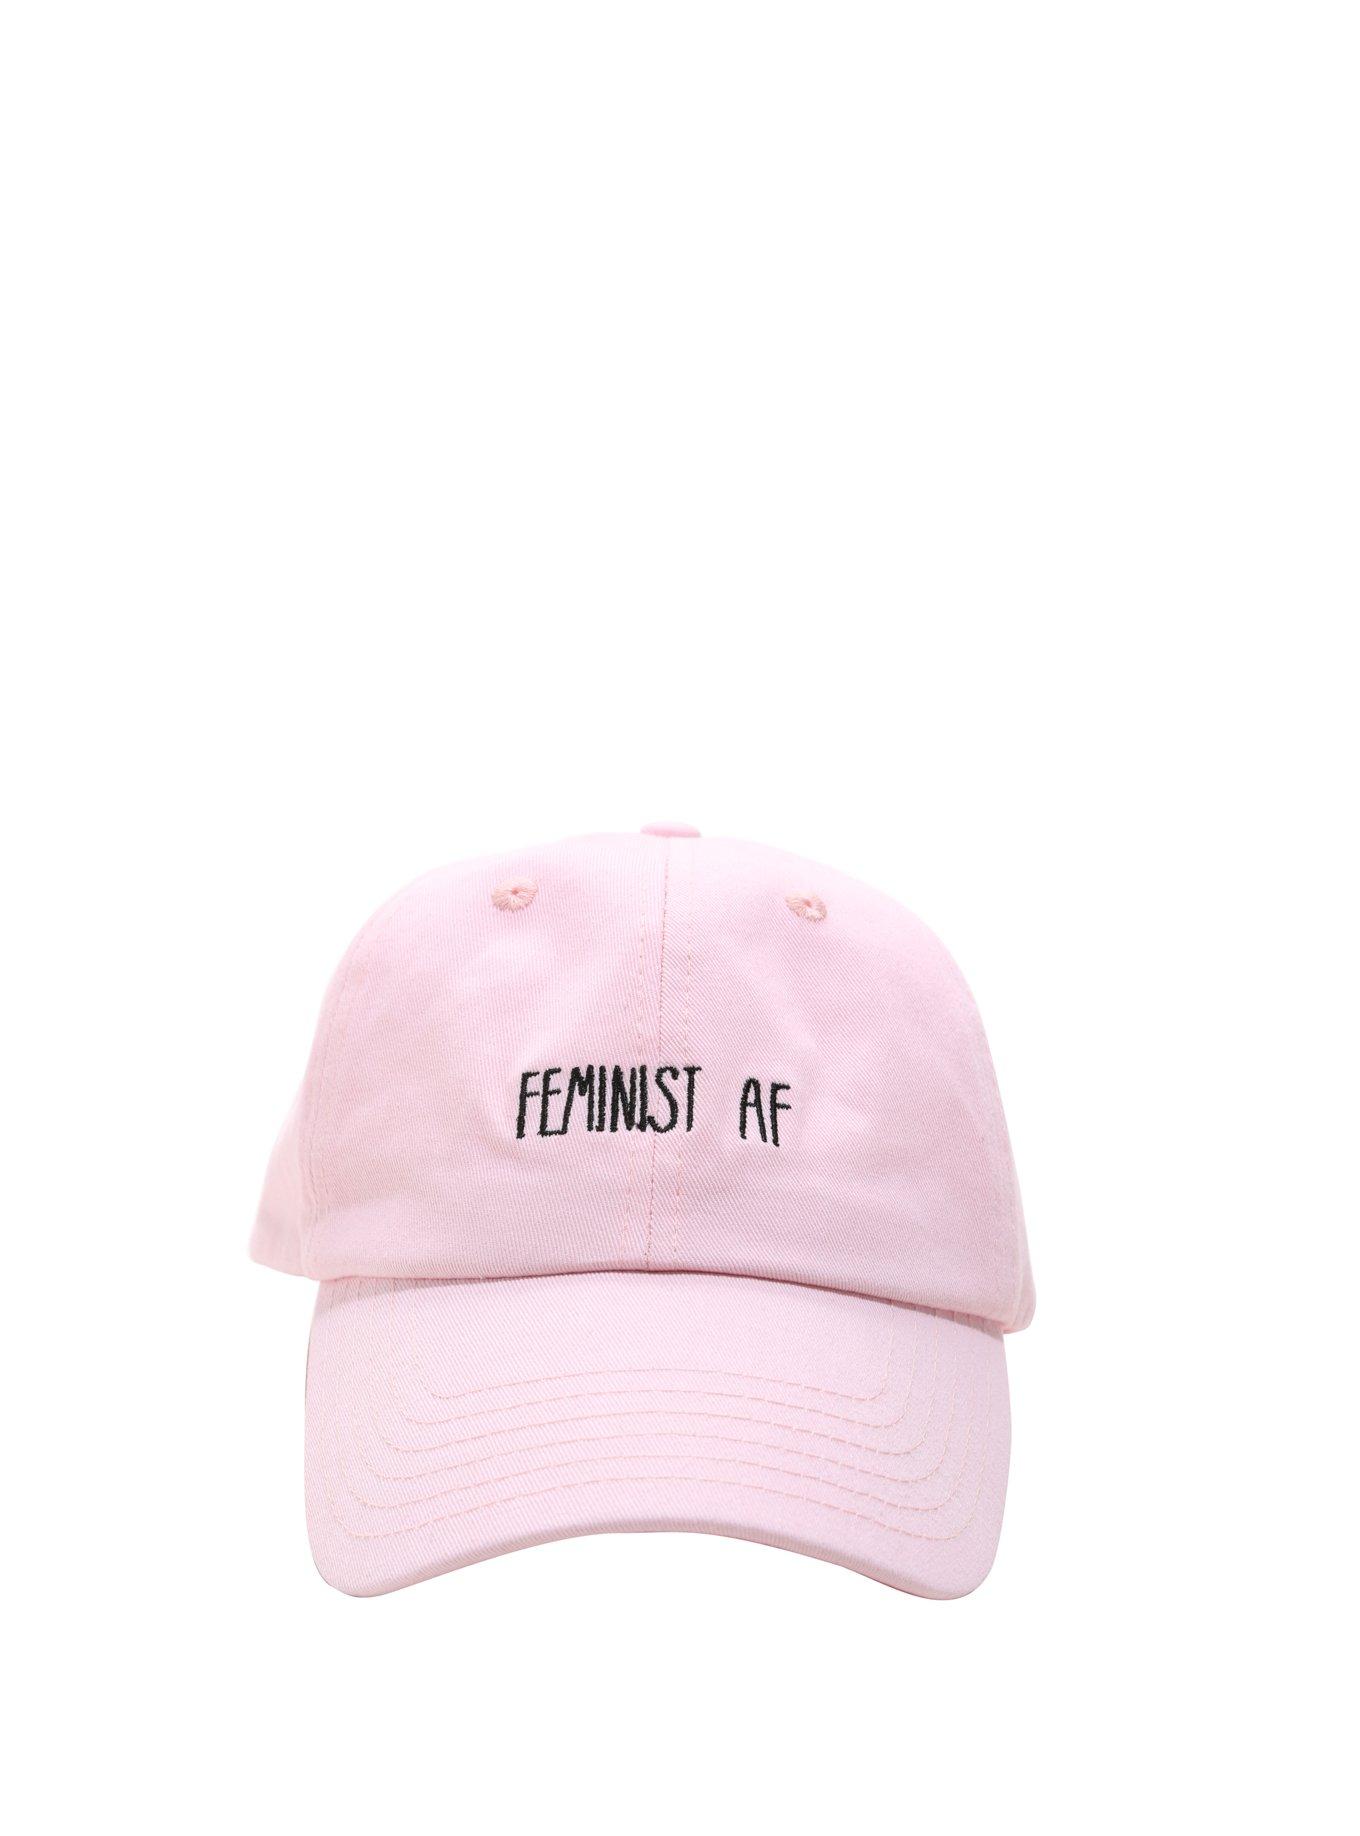 Feminist AF Dad Cap, , alternate